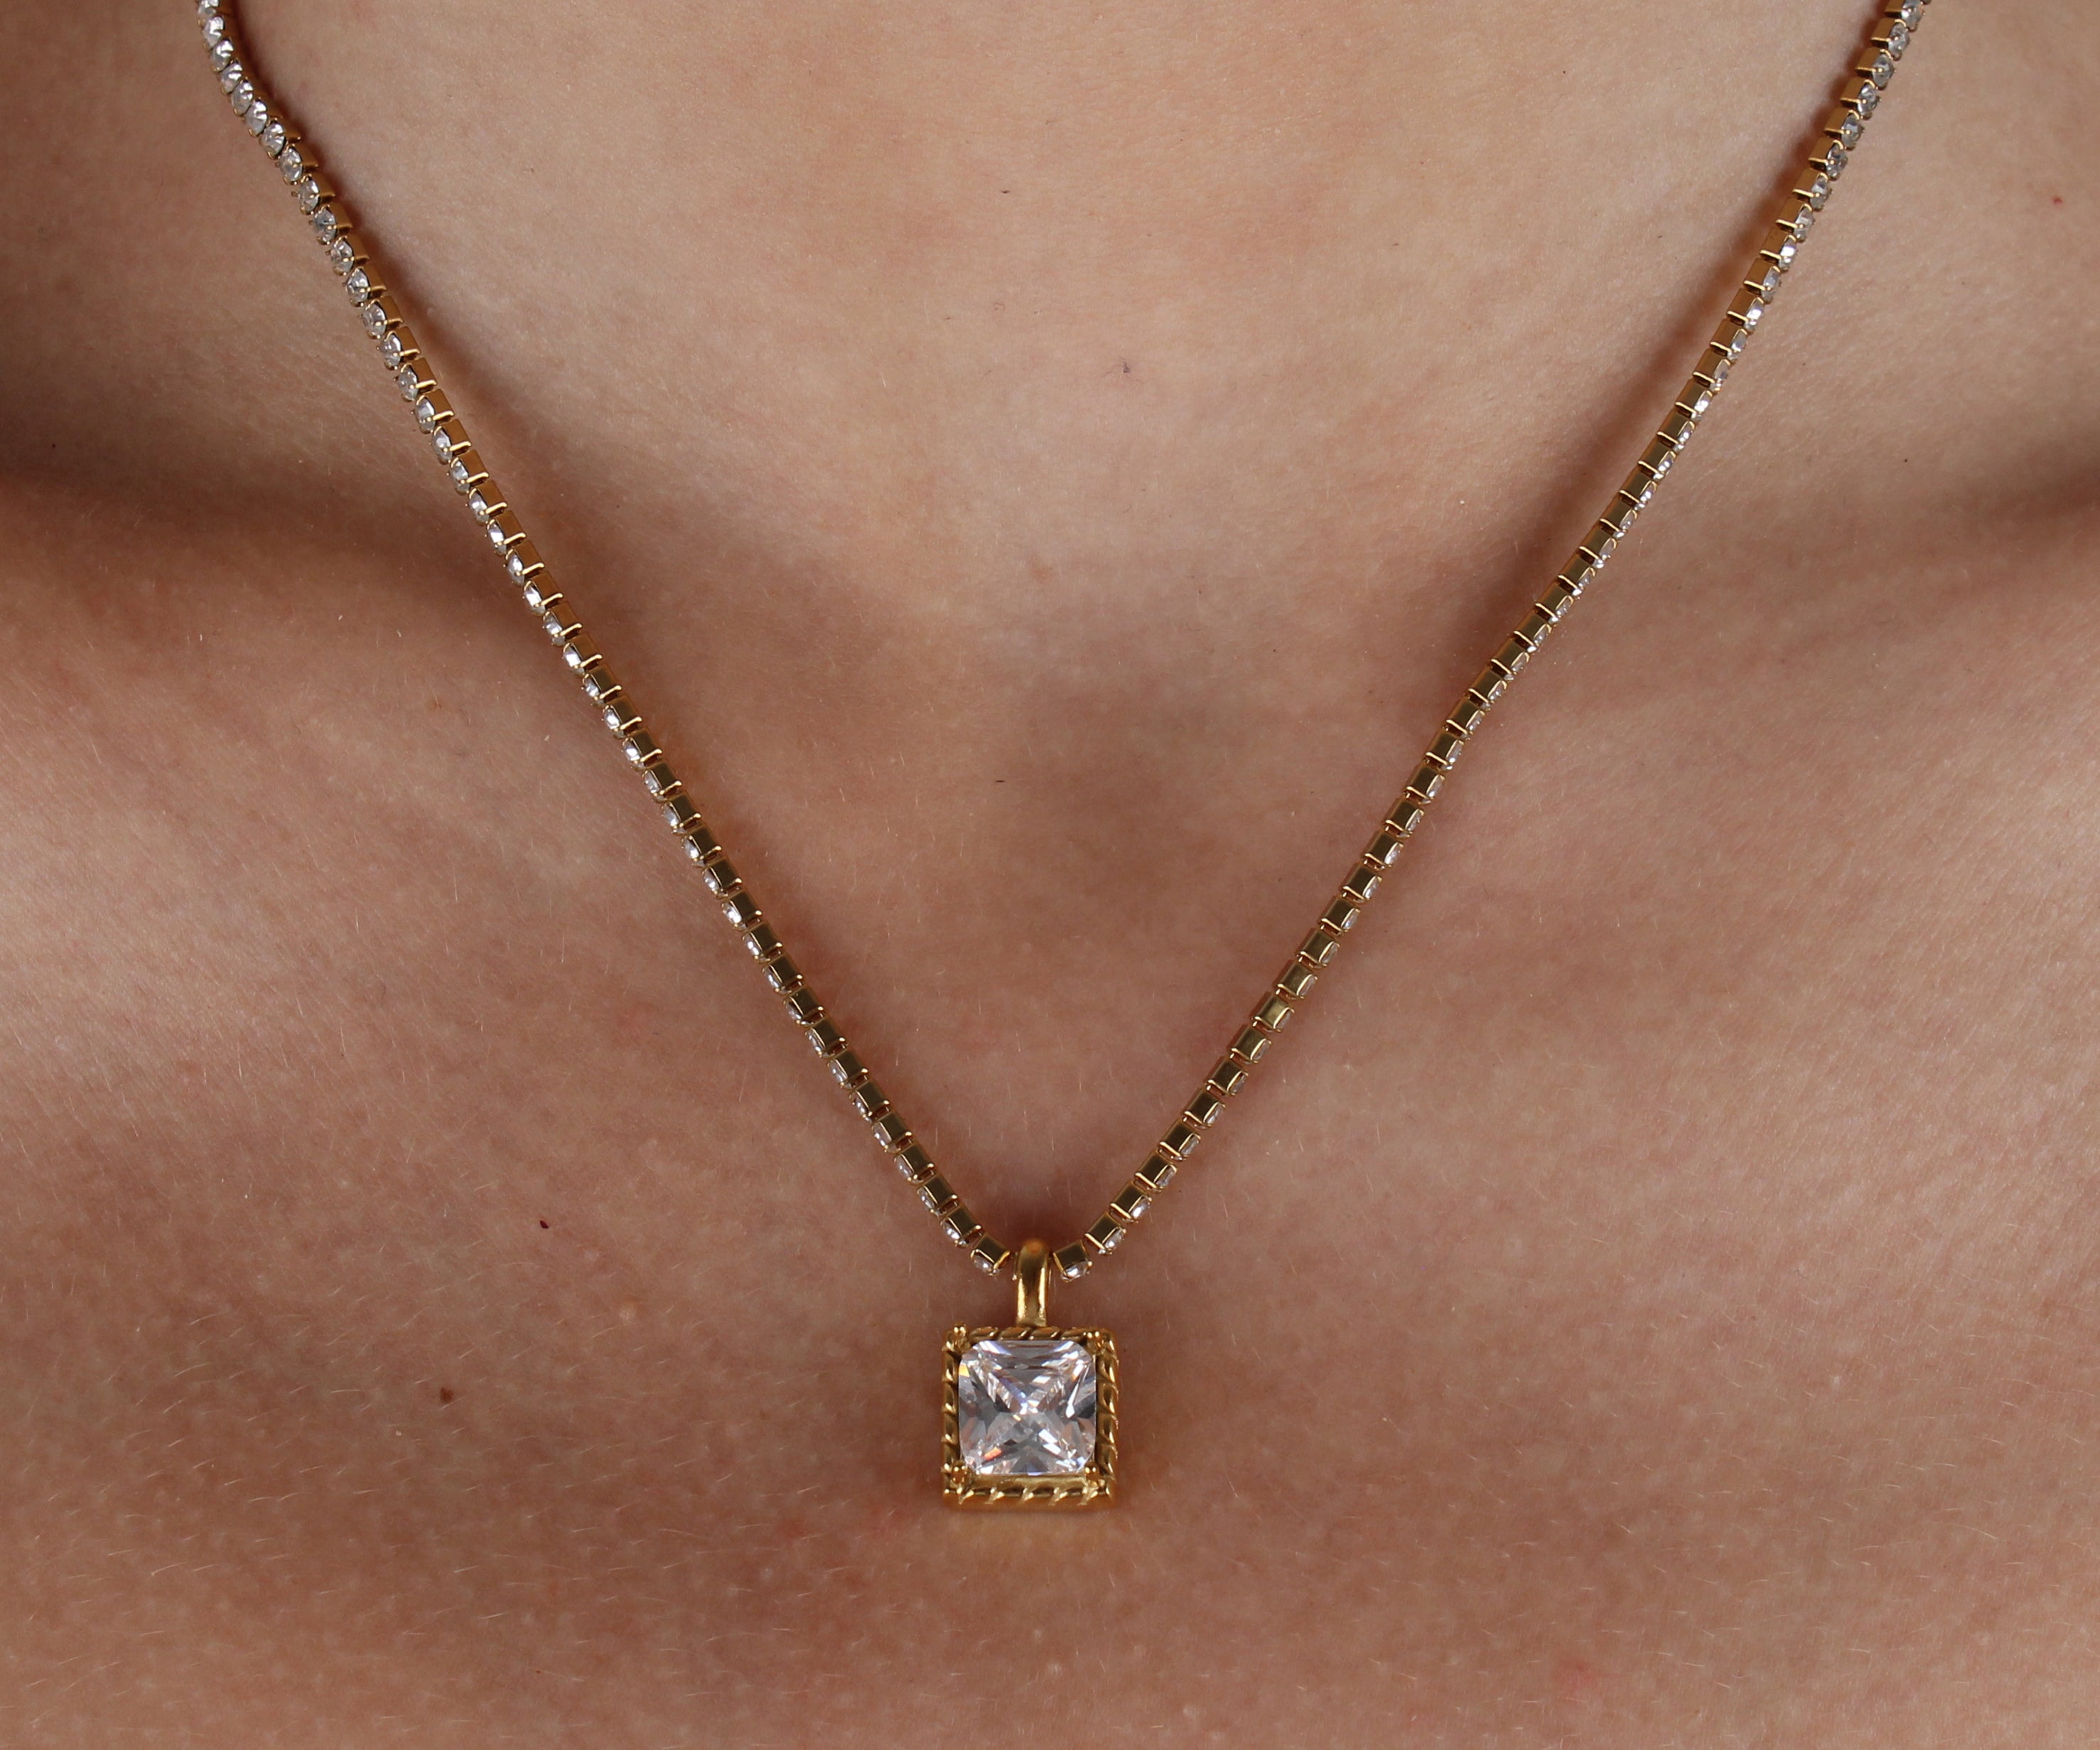 Colección Femme | Collar Aurea de acero inoxidable bañado en oro 18k. Marca Vesiica.